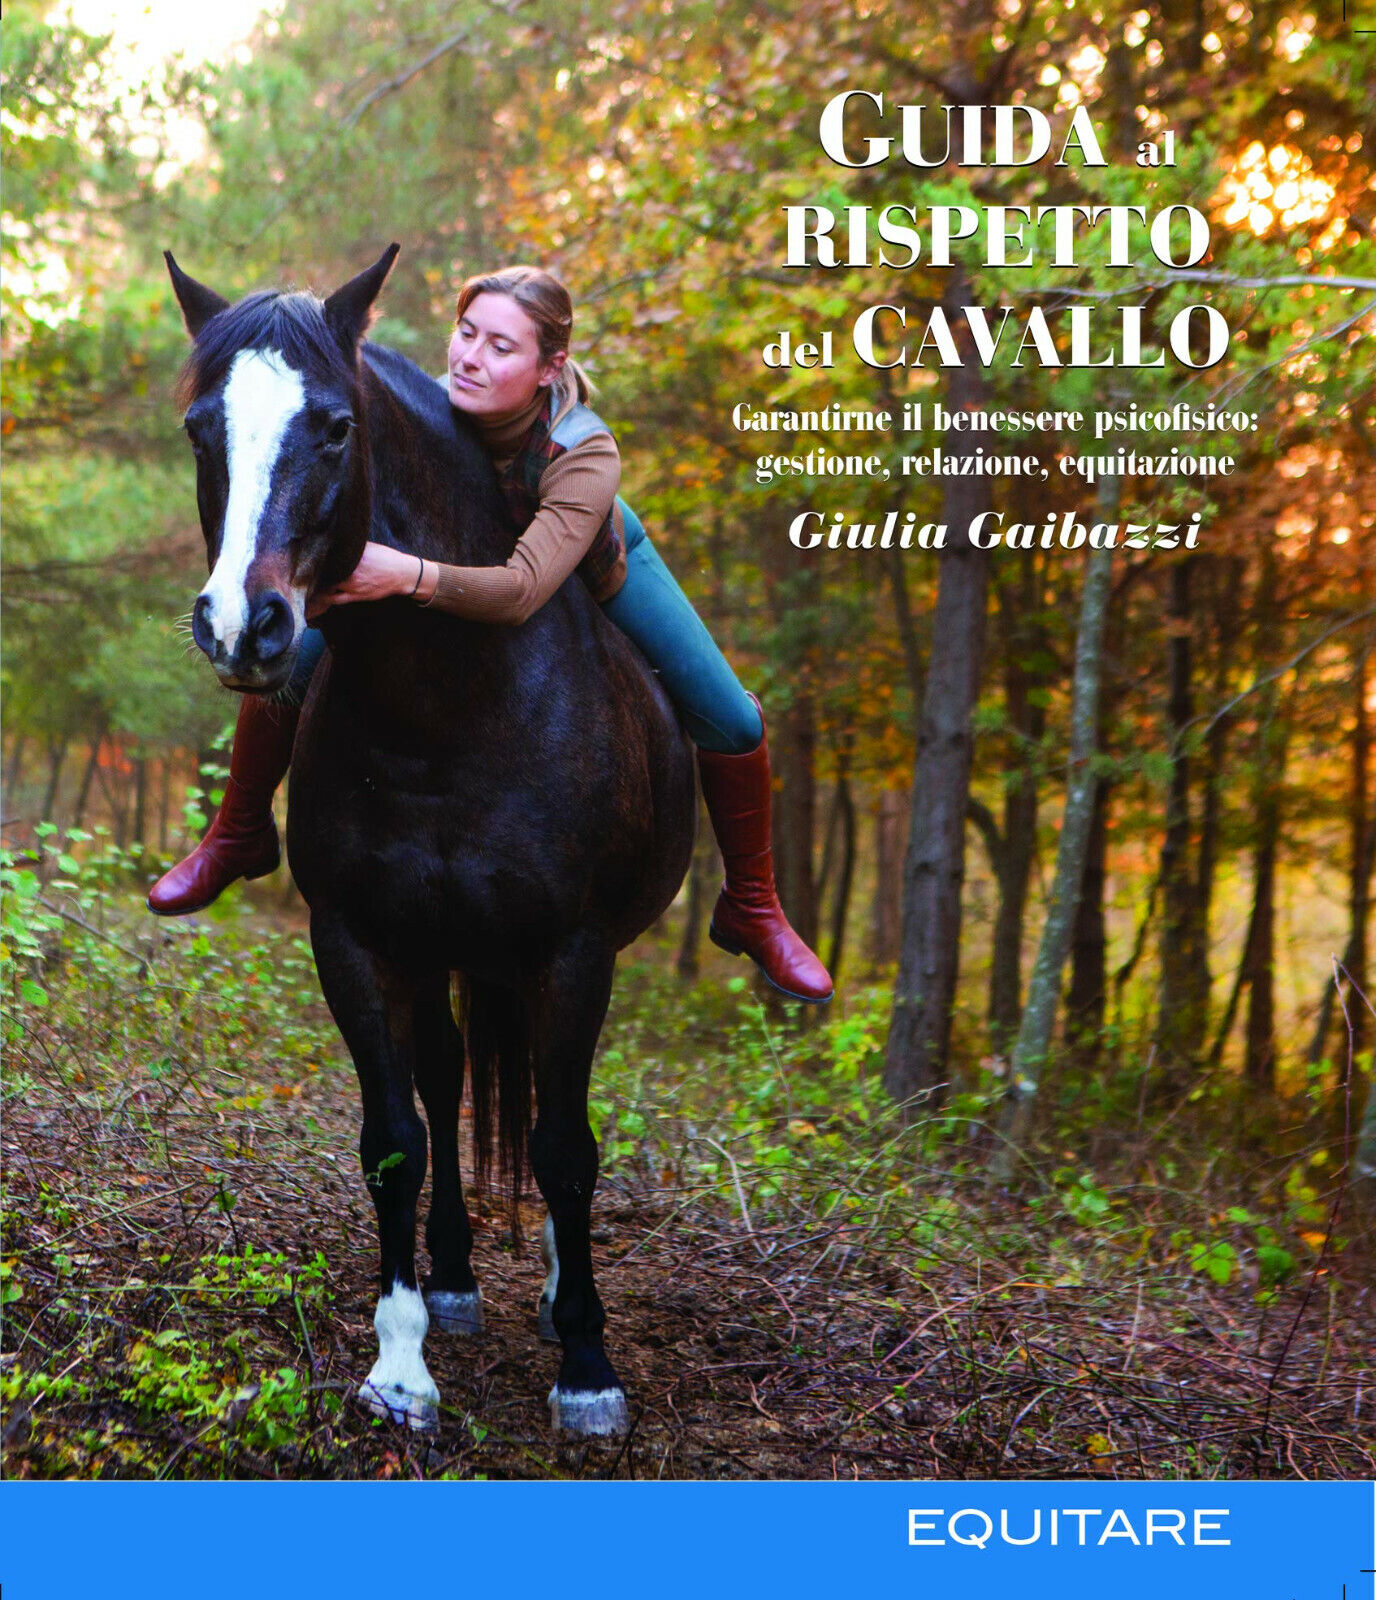 Guida al rispetto del cavallo - AA.VV. - Equitare, 2021 libro usato